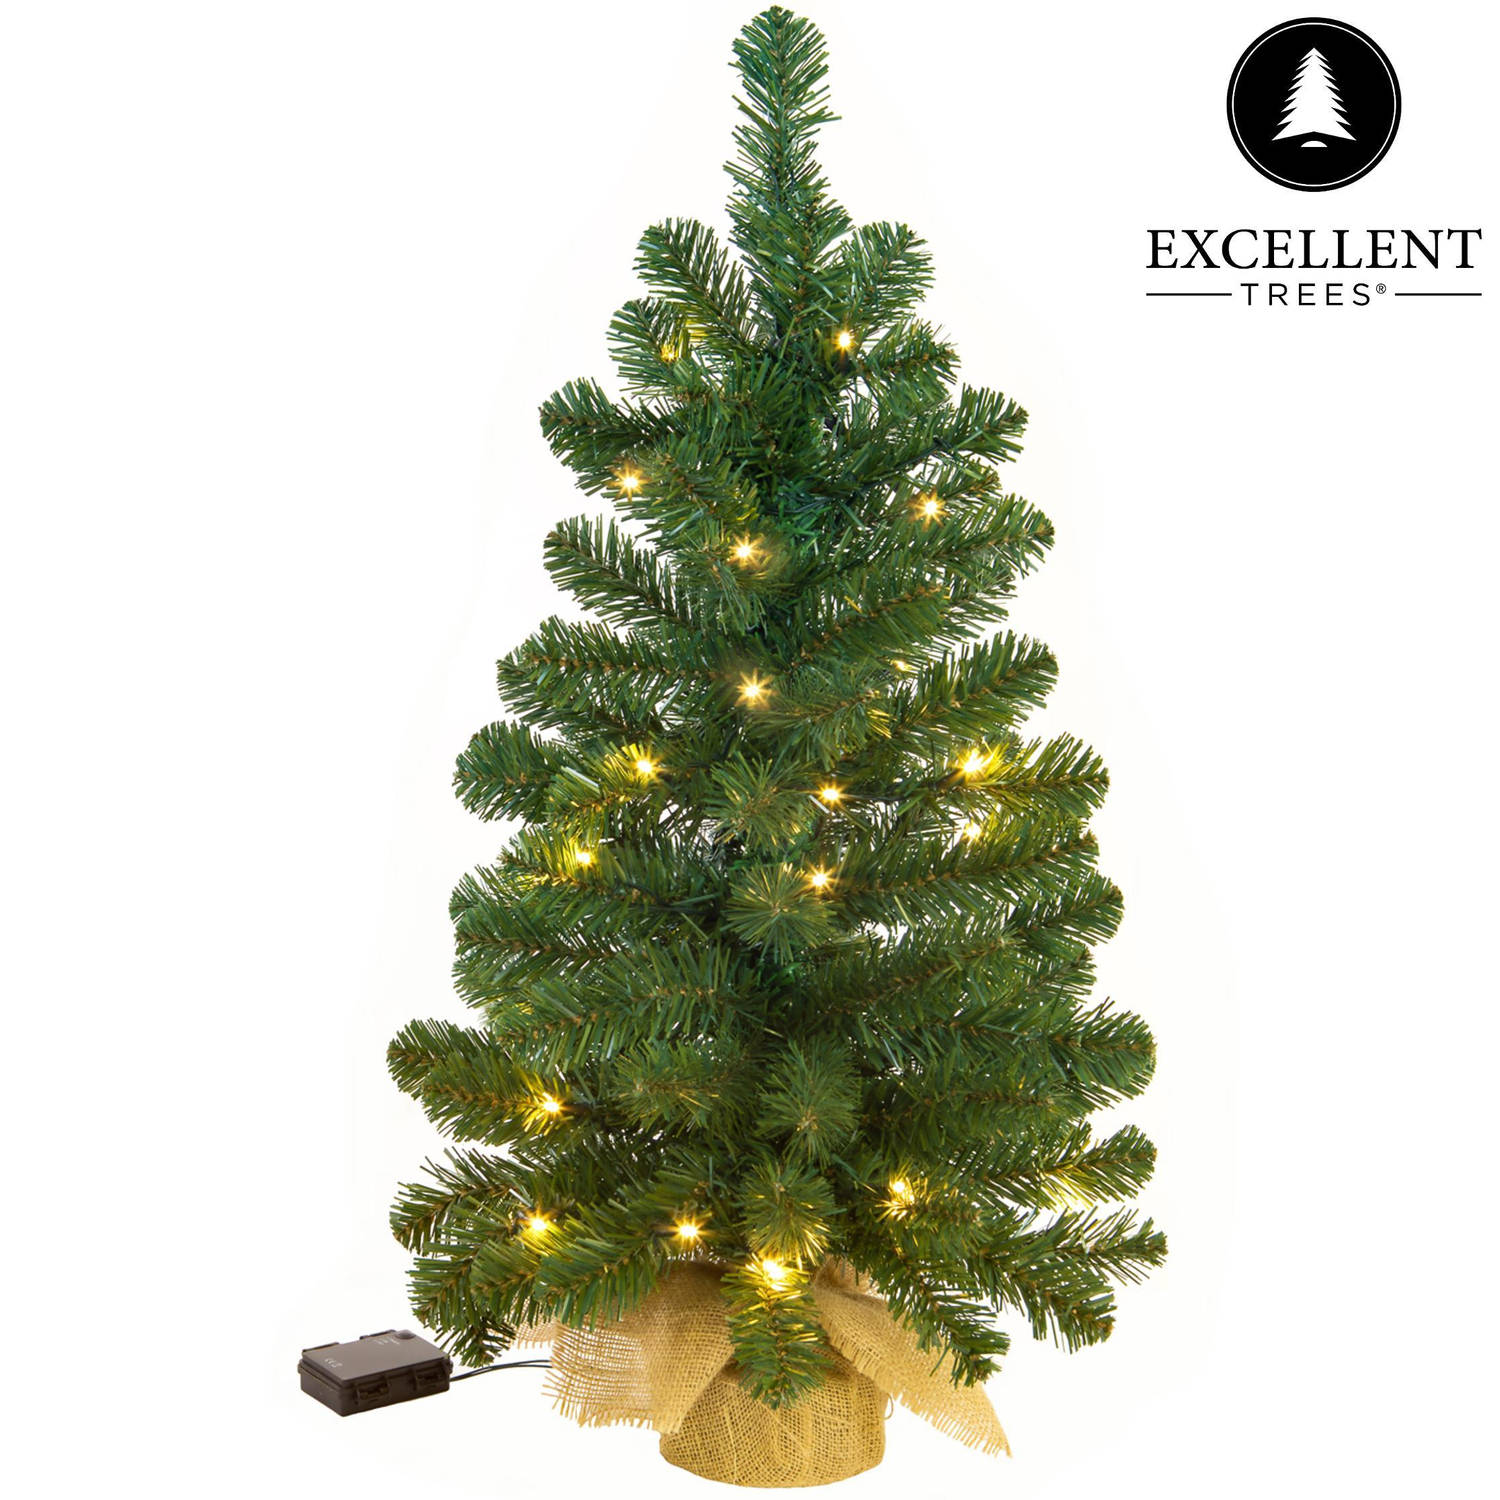 Kerstboom Verlicht Excellent Trees Jarbo Green 90 cm 80 LED